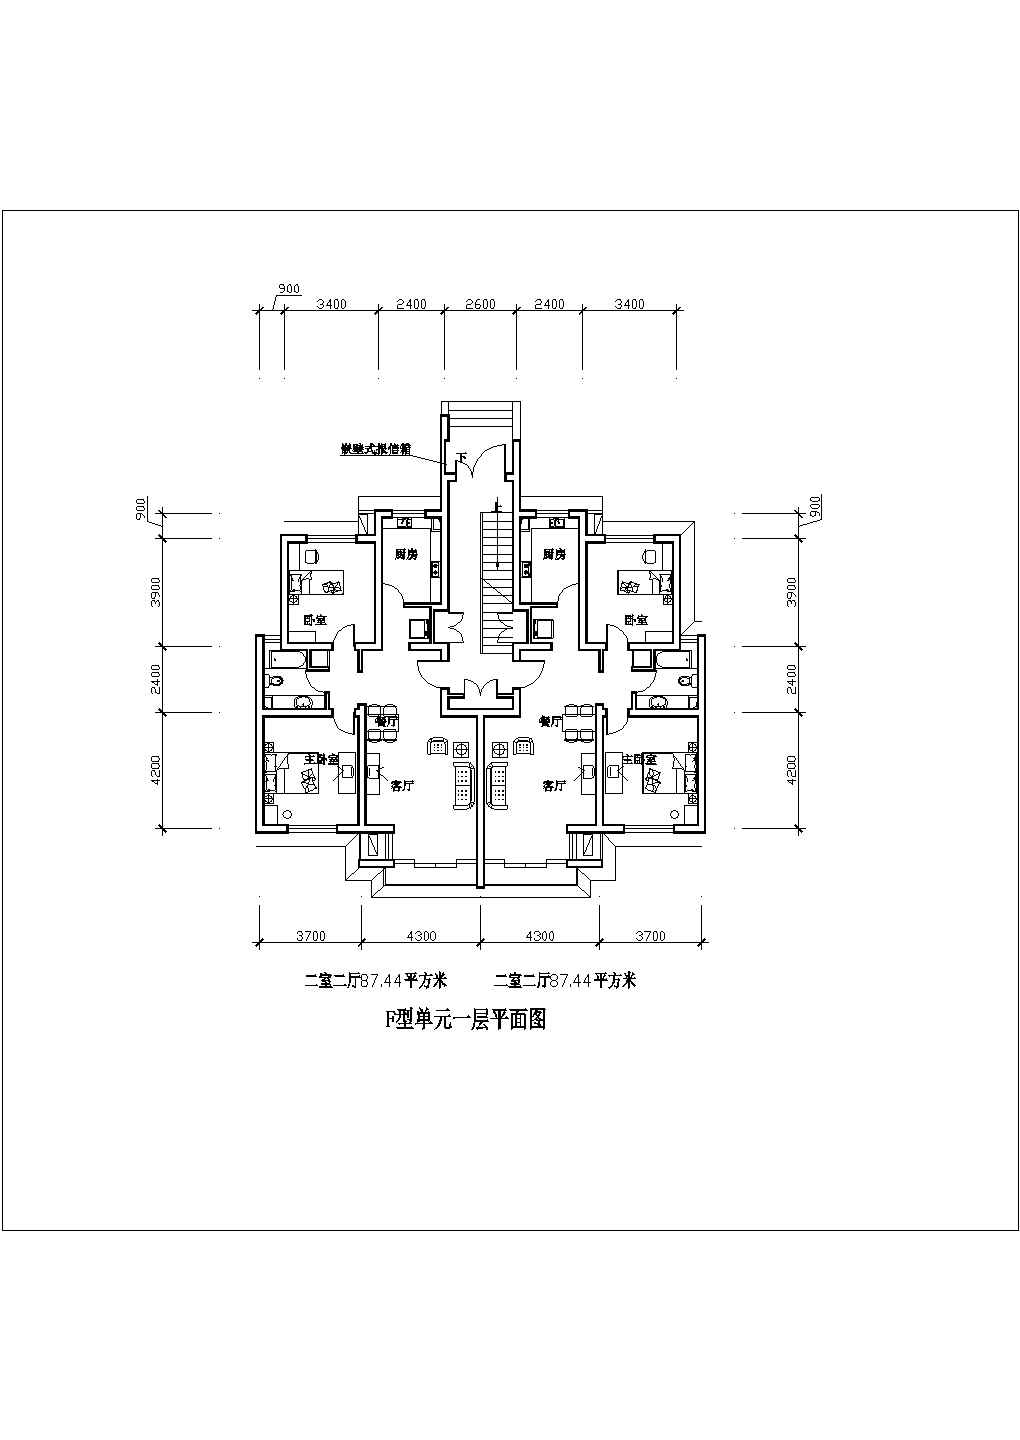 二室二厅住宅户型设计图（87平米）